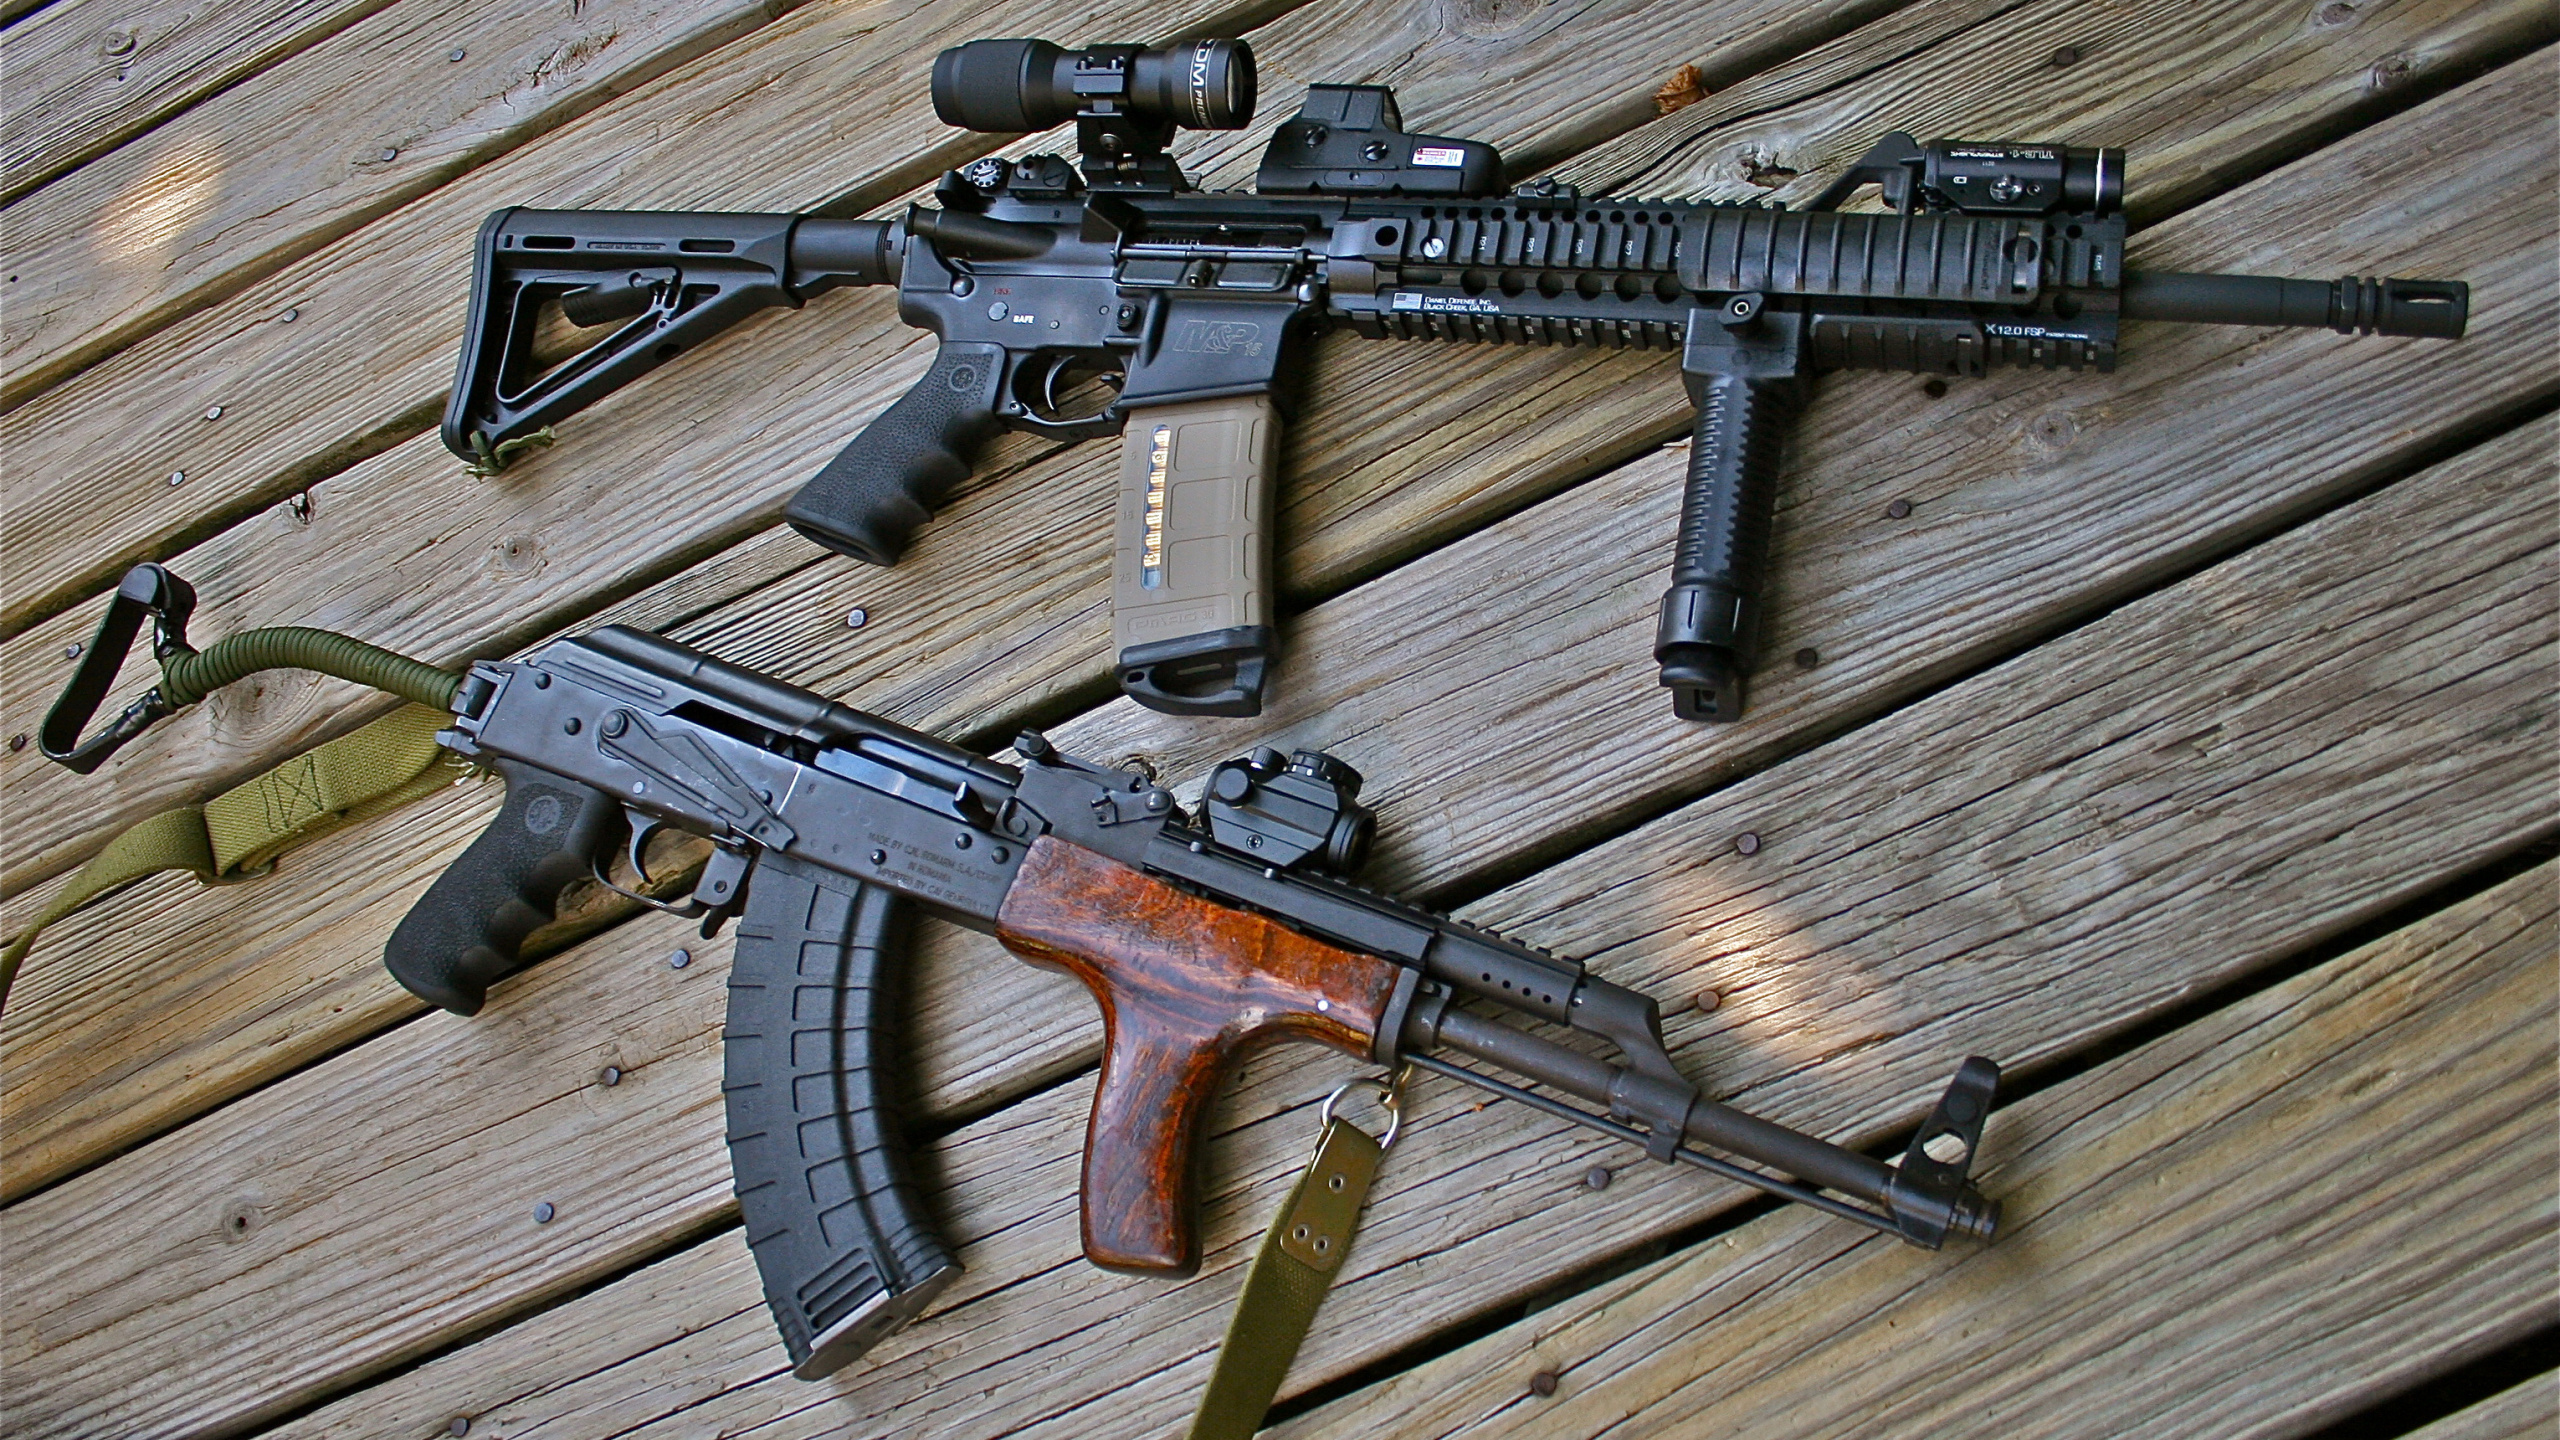 Rifle, m4 Carbine, Firearm, Gun, Assault Rifle. Wallpaper in 2560x1440 Resolution